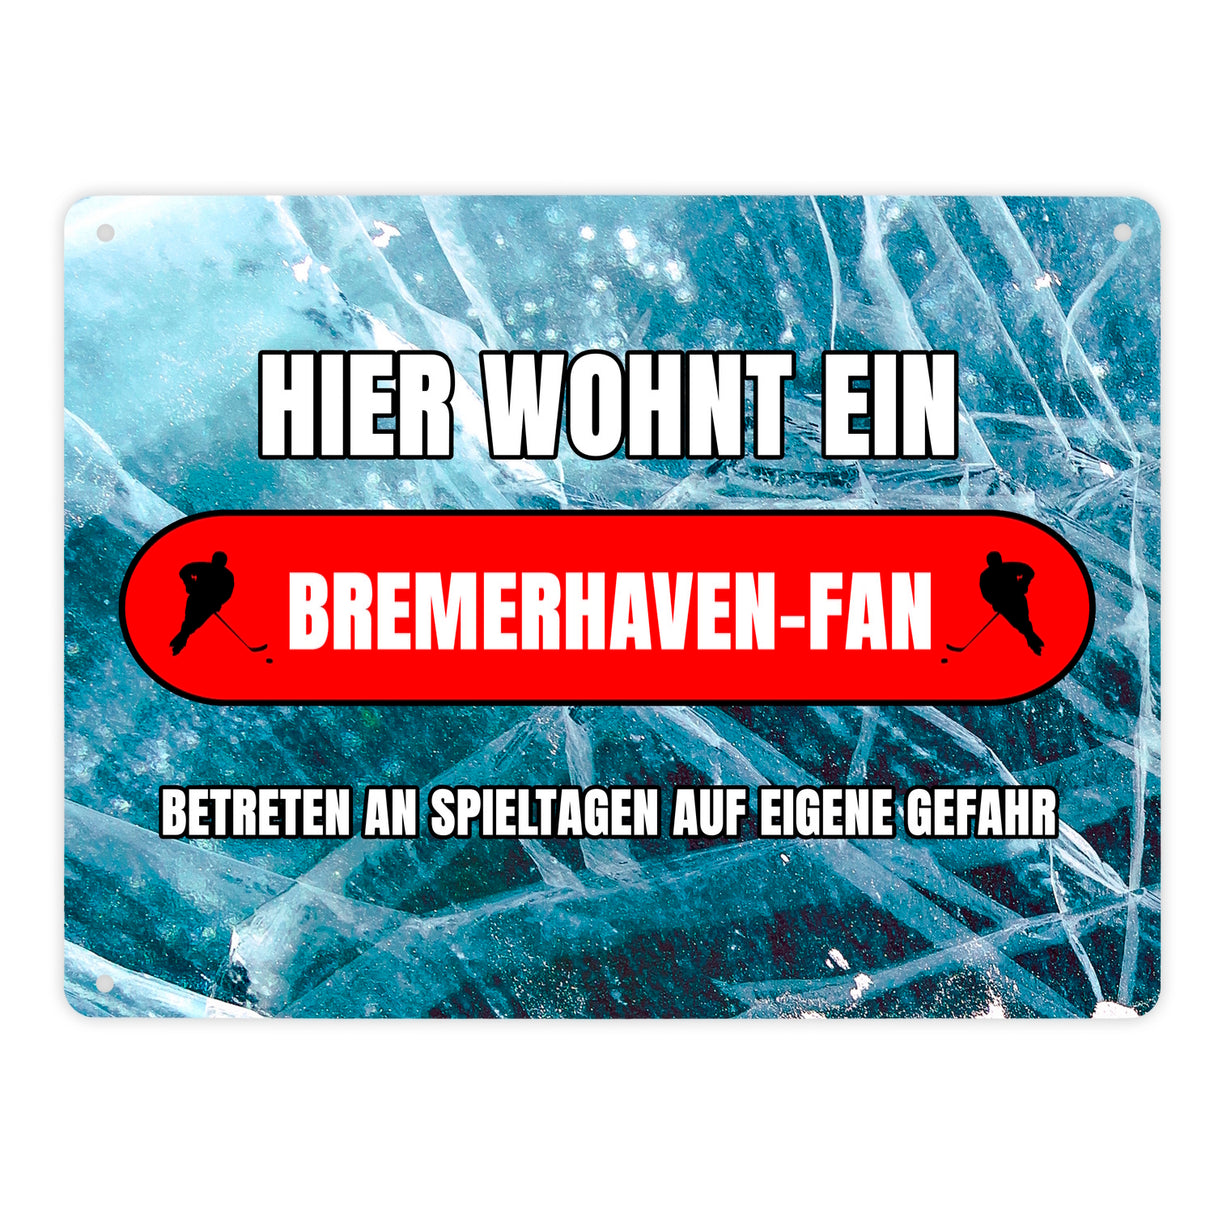 Hier wohnt ein Bremerhaven-Fan Metallschild in 15x20 cm mit Eishallen Boden-Motiv